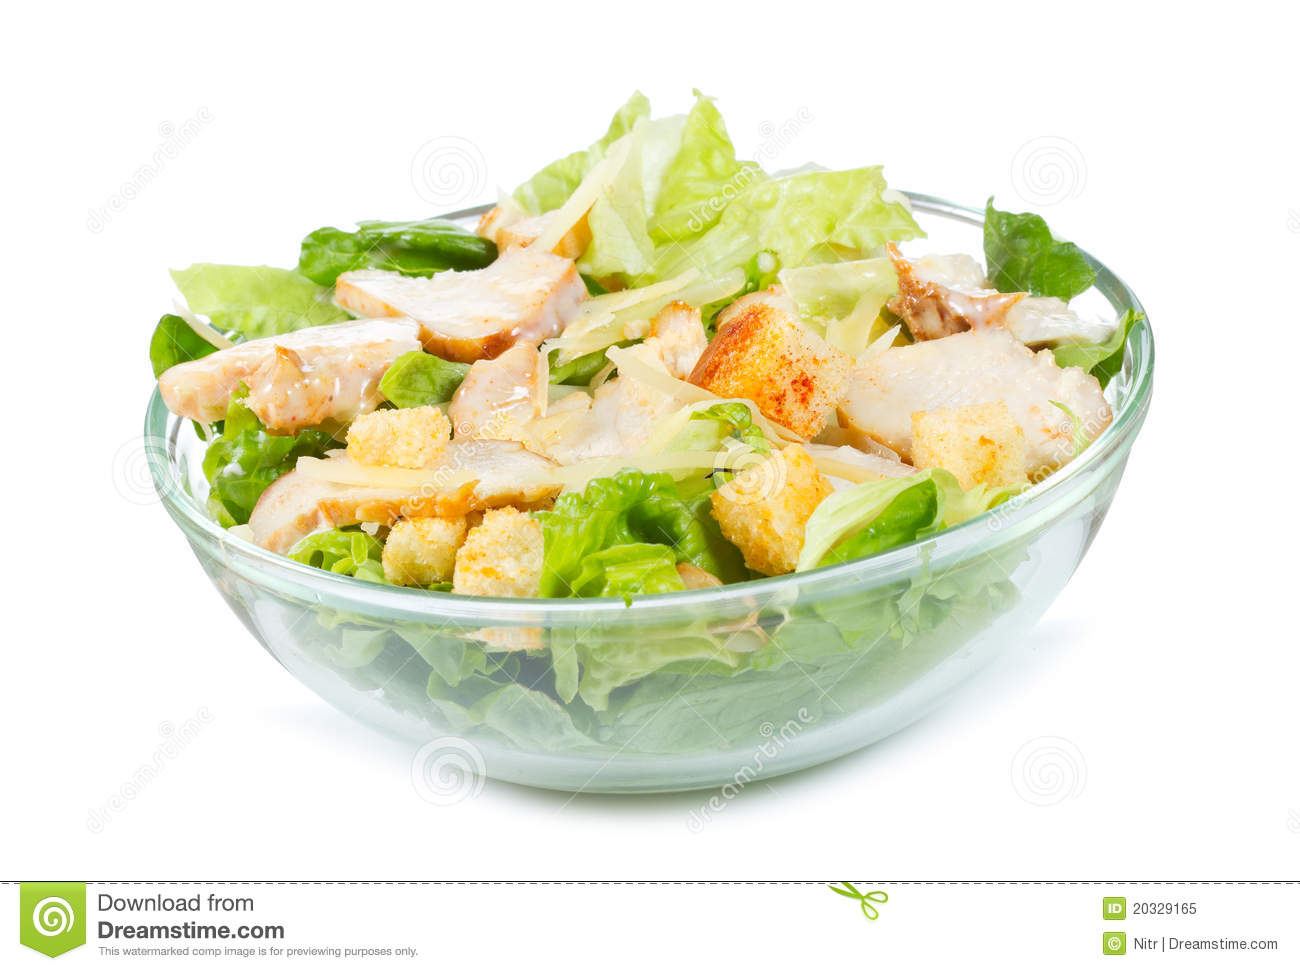 chicken salad clipart - photo #39